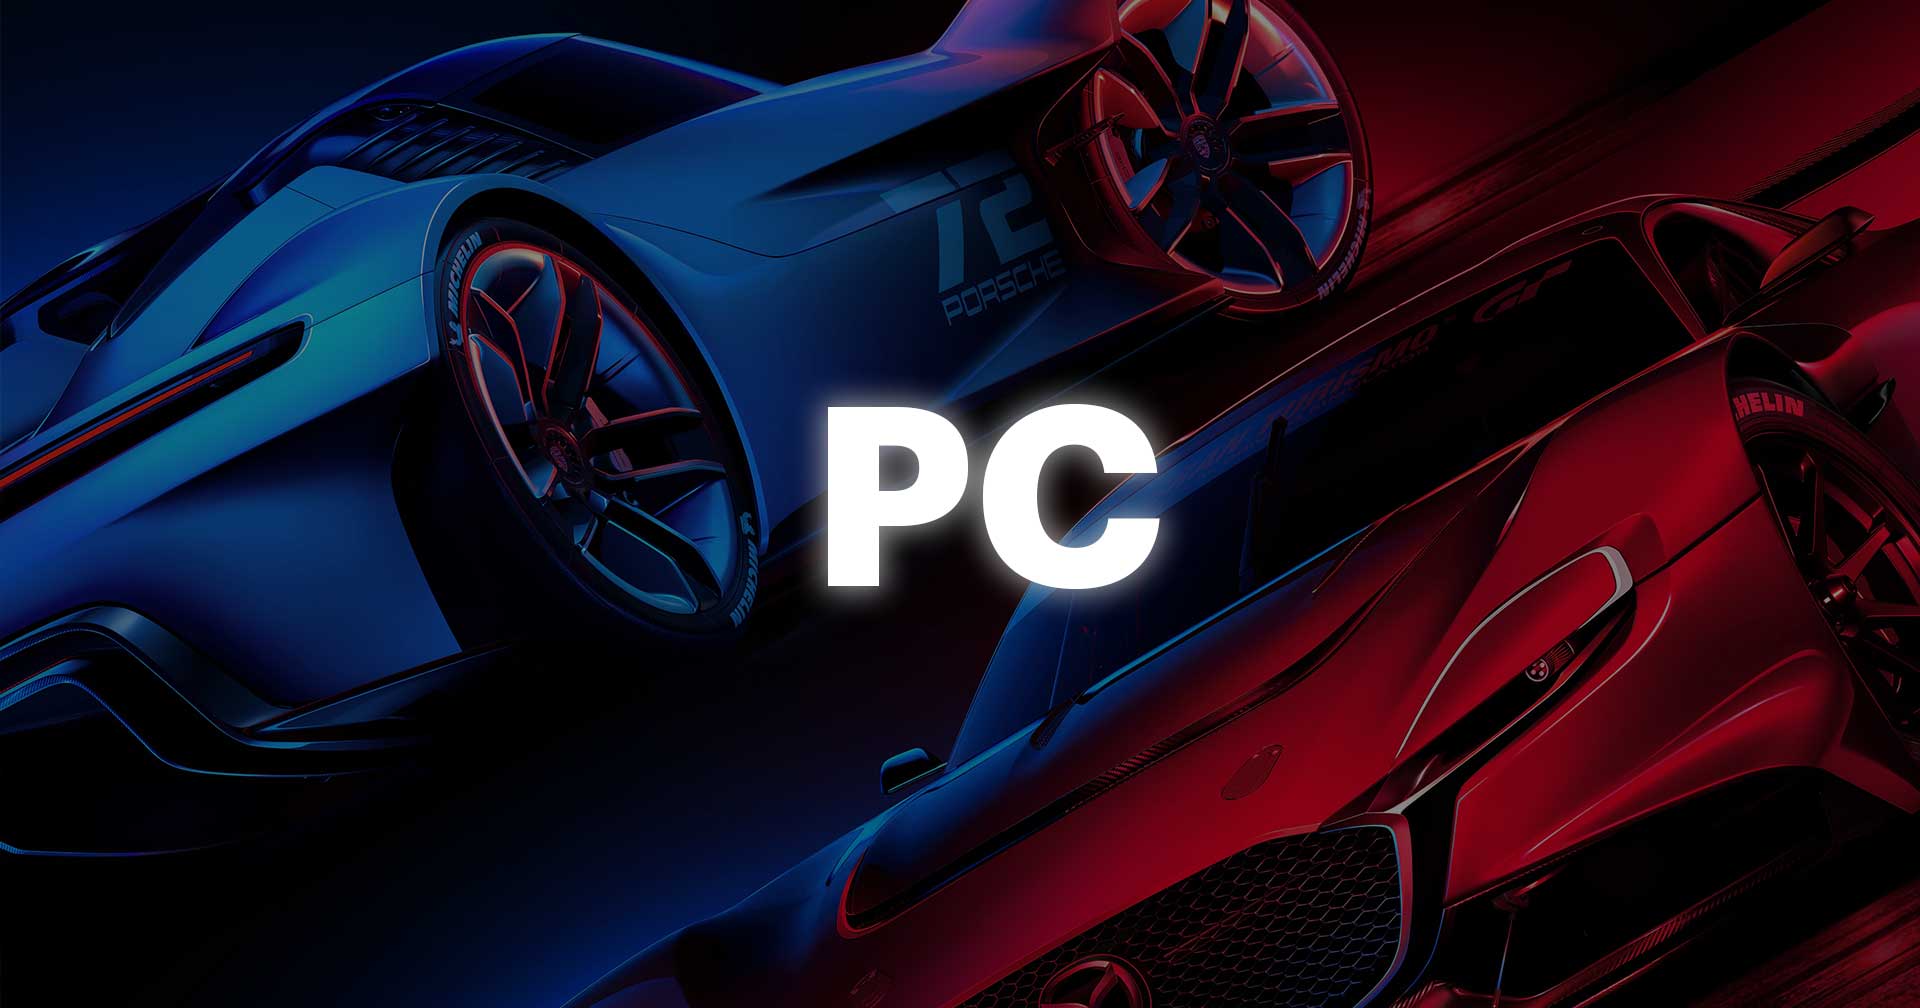 ผู้สร้าง Gran Turismo กำลังคิดที่จะนำเกมพอร์ตลง PC